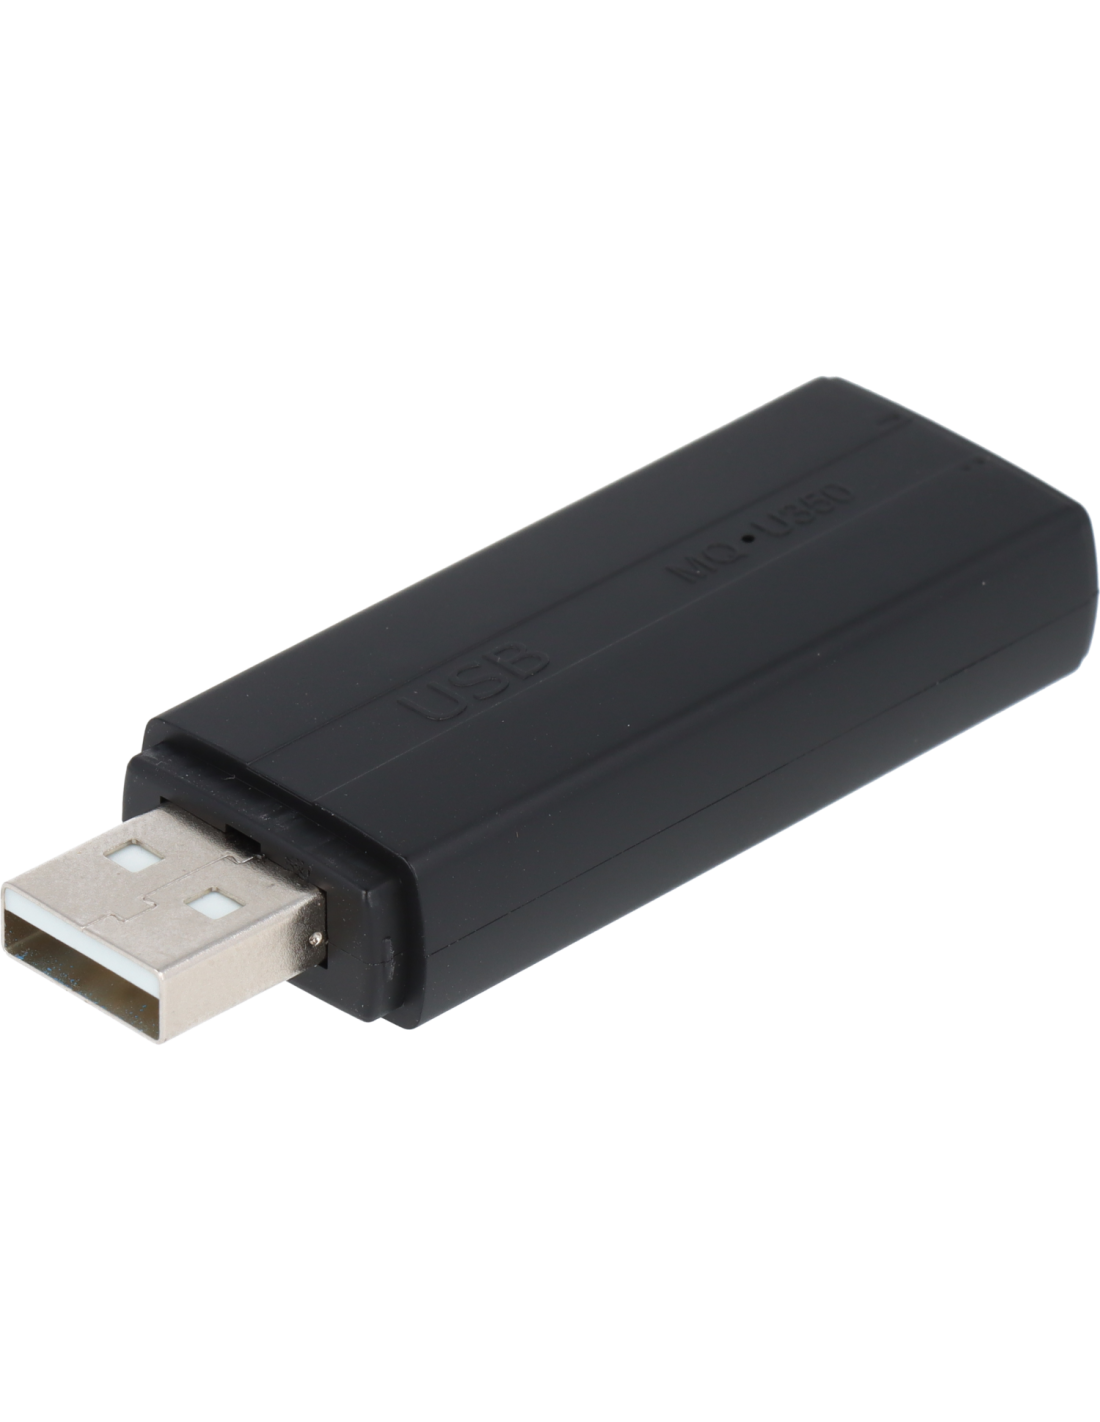 Micro espion clé USB - enregistreur audio miniature - Hd Protech